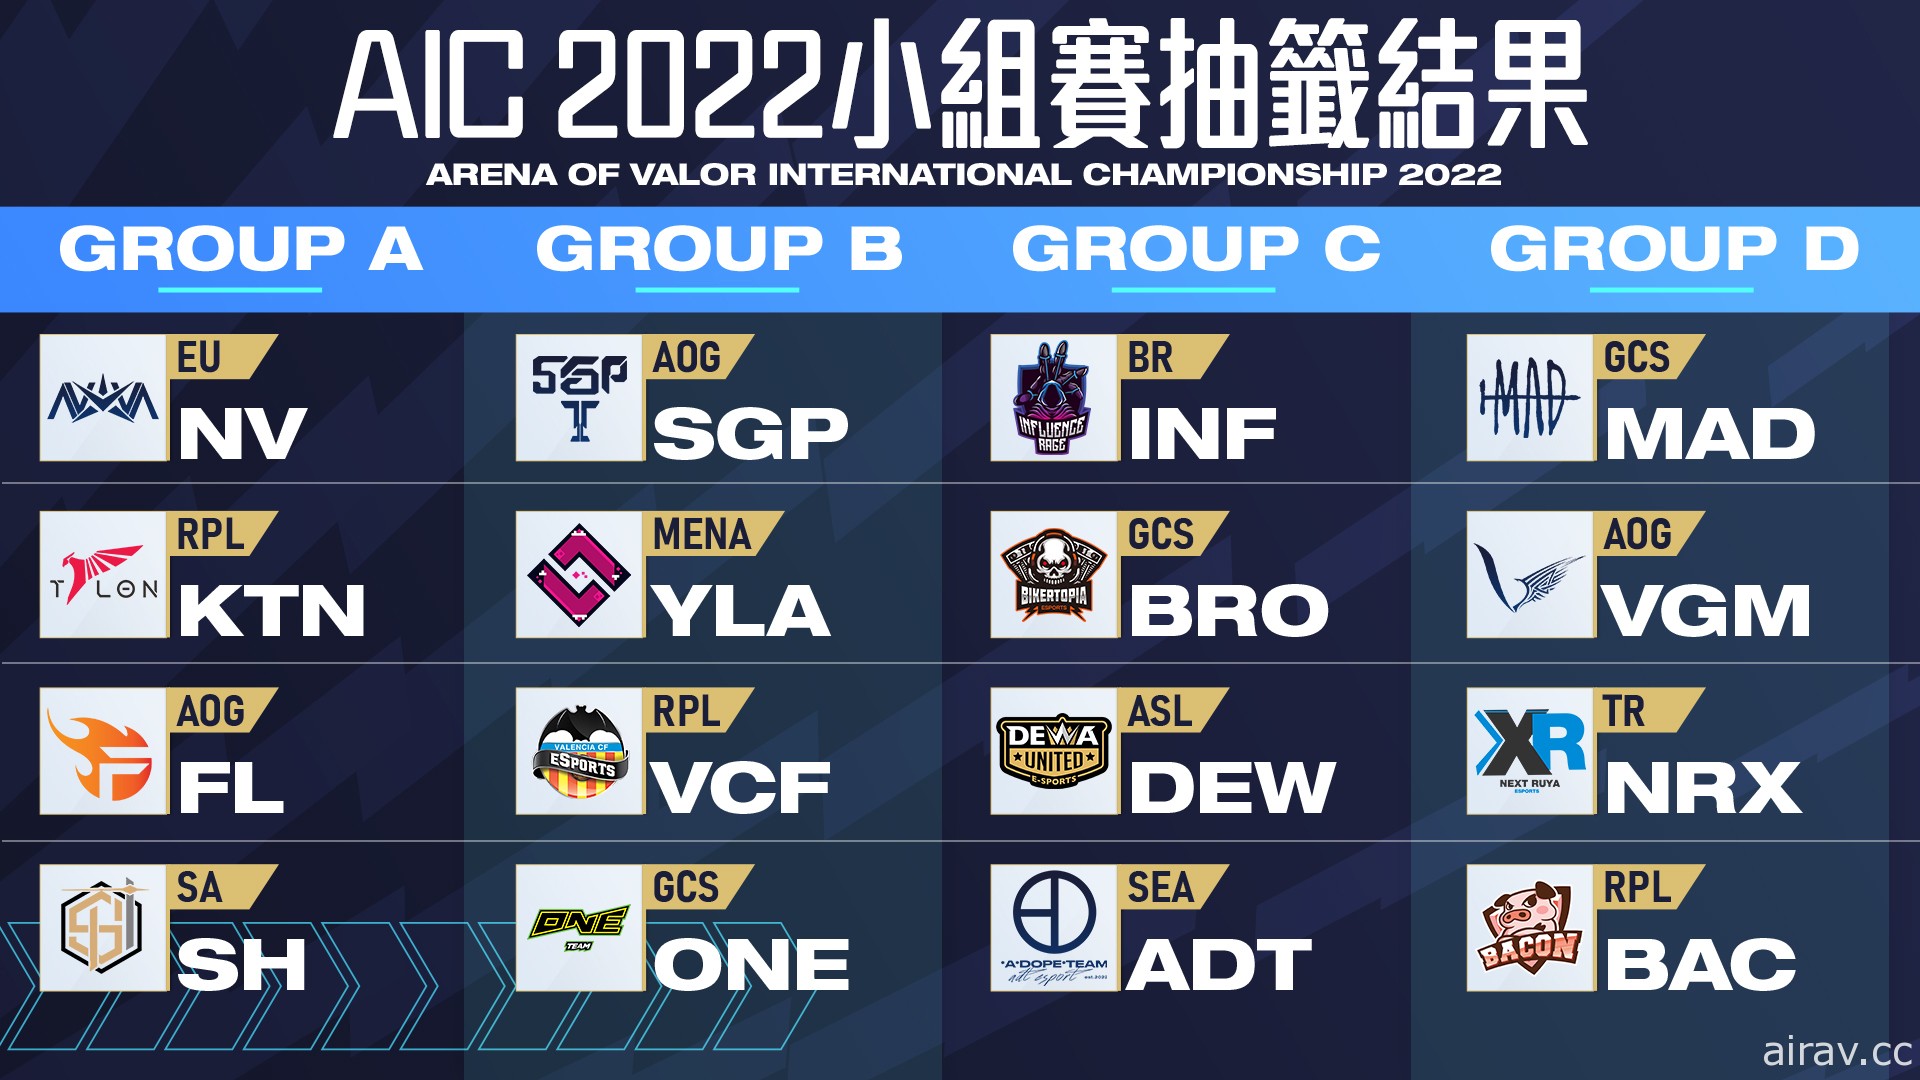 《傳說對決》AIC 2022 國際錦標賽小組賽抽籤結果和賽程揭曉 6/16 正式開戰